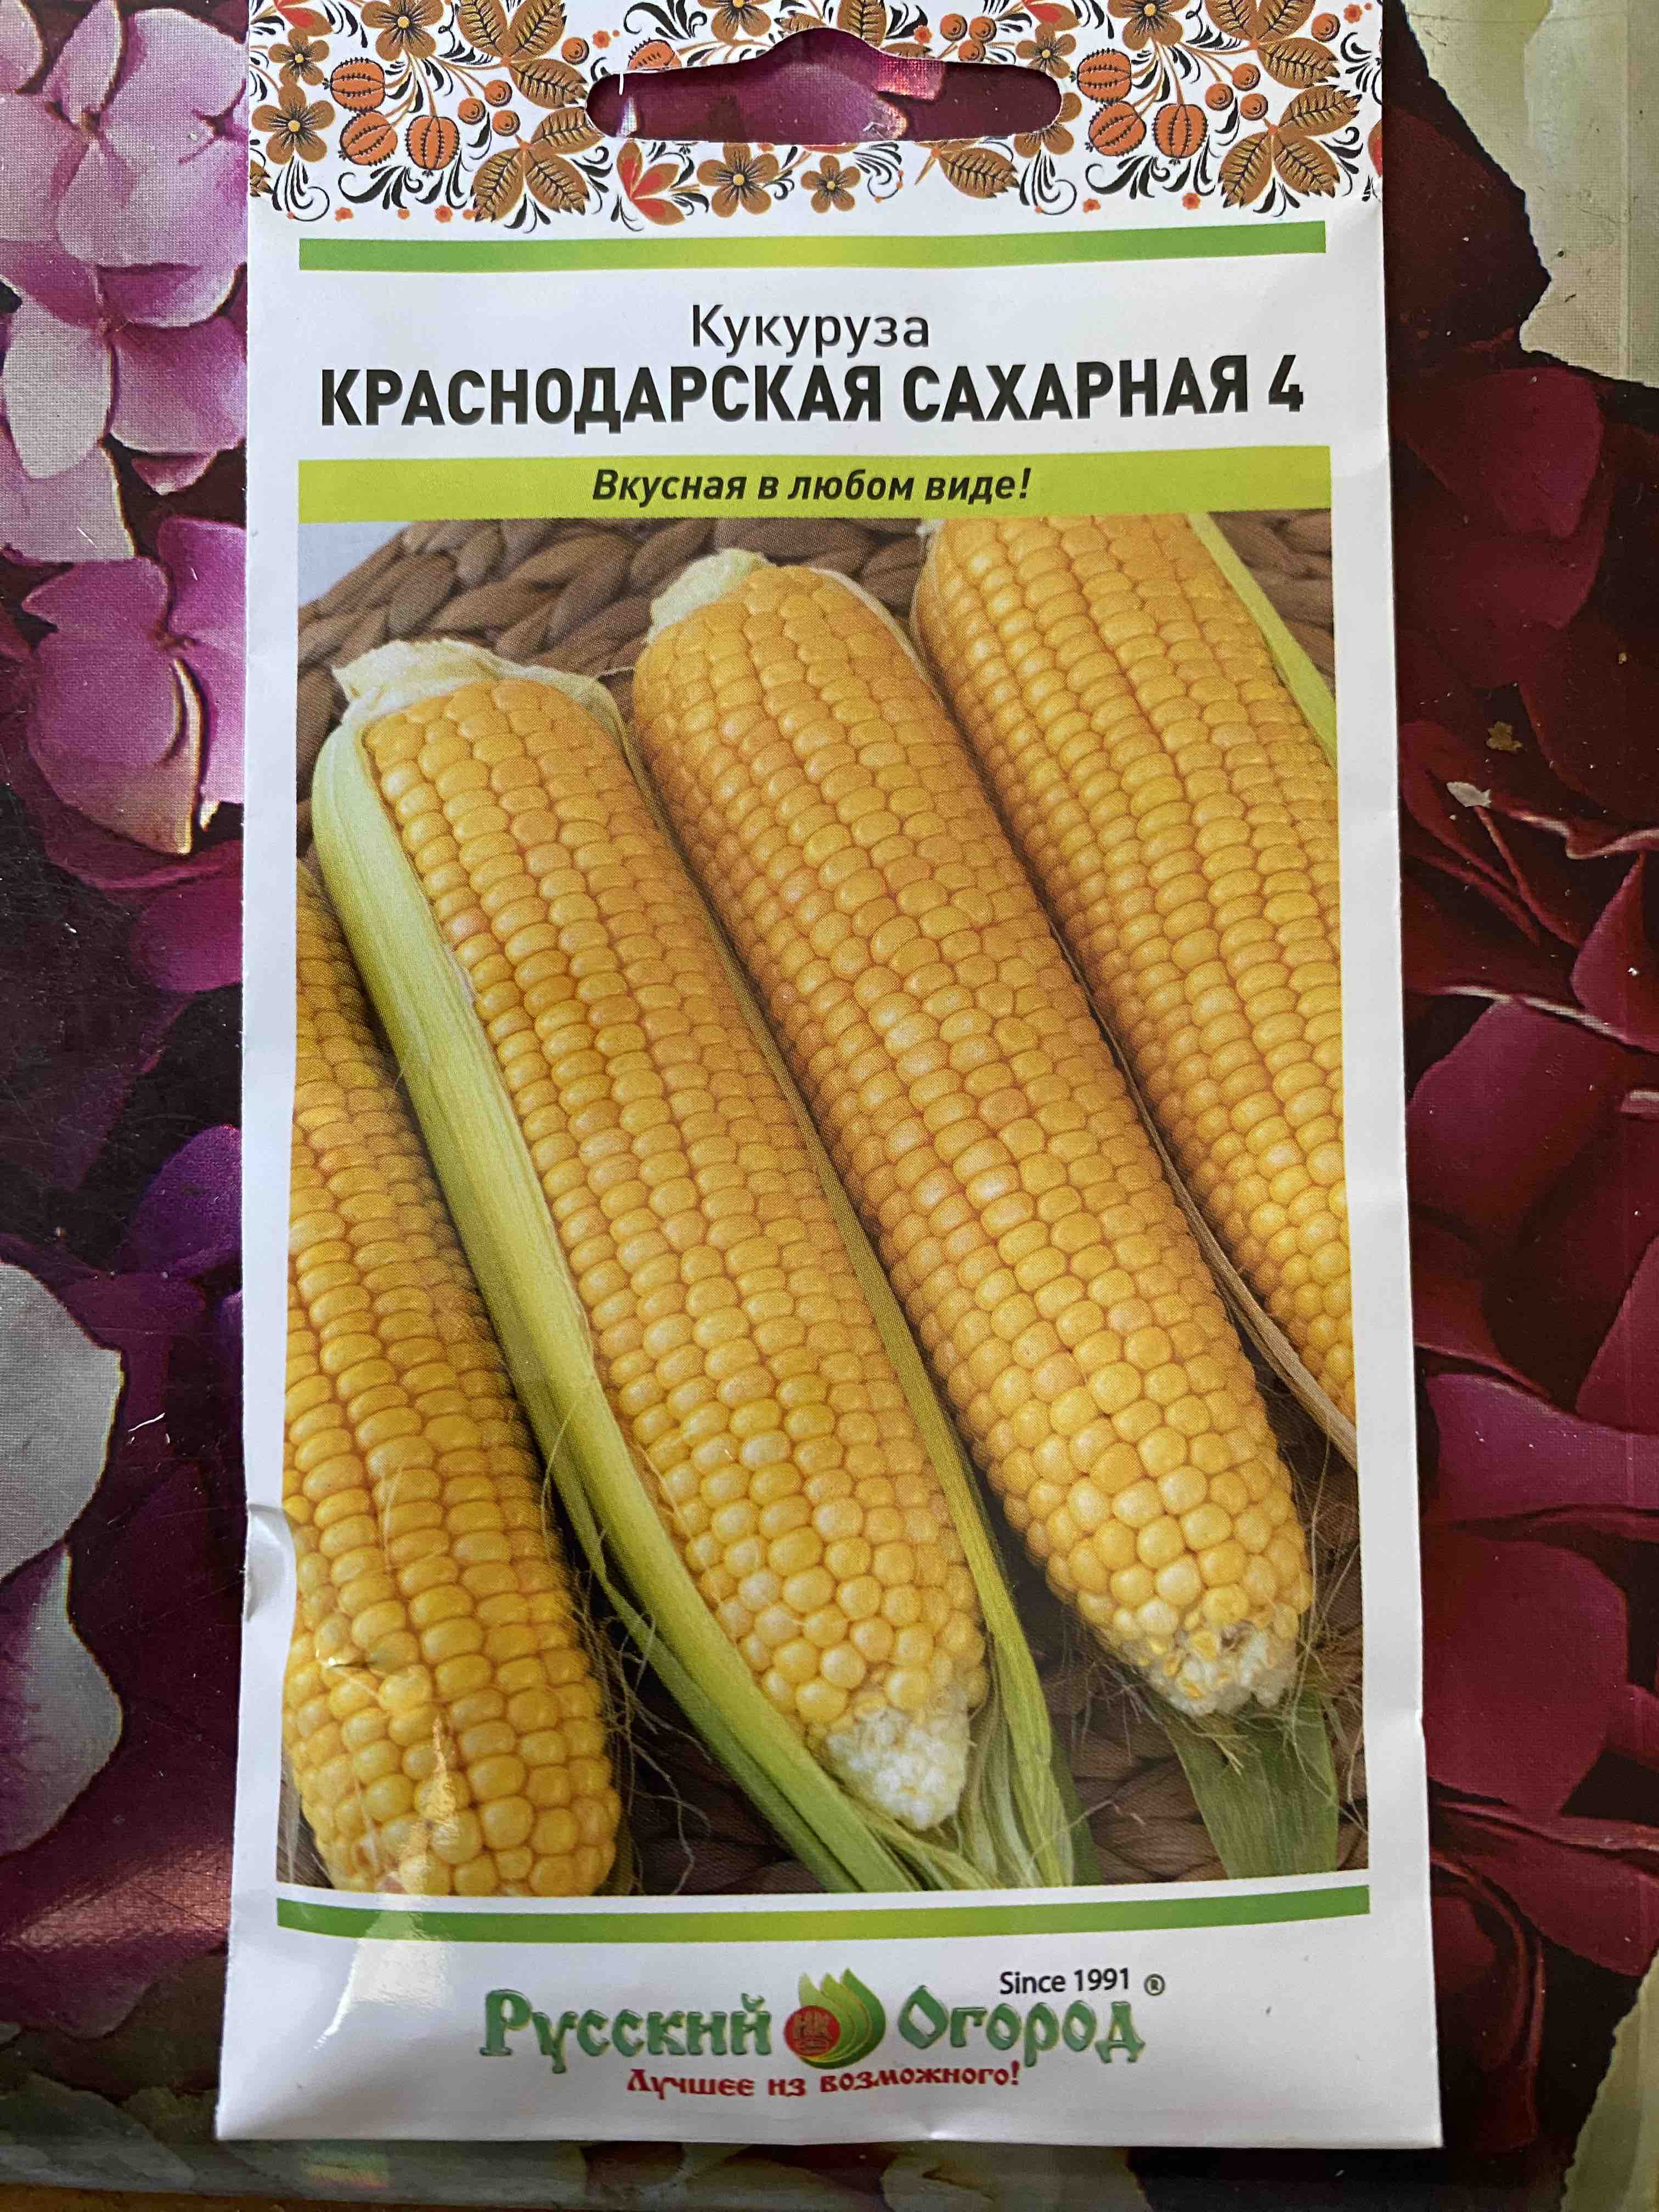 Кукуруза ДКС 3151: описание сорта, характеристики, особенности посадки и выращивания, отзывы